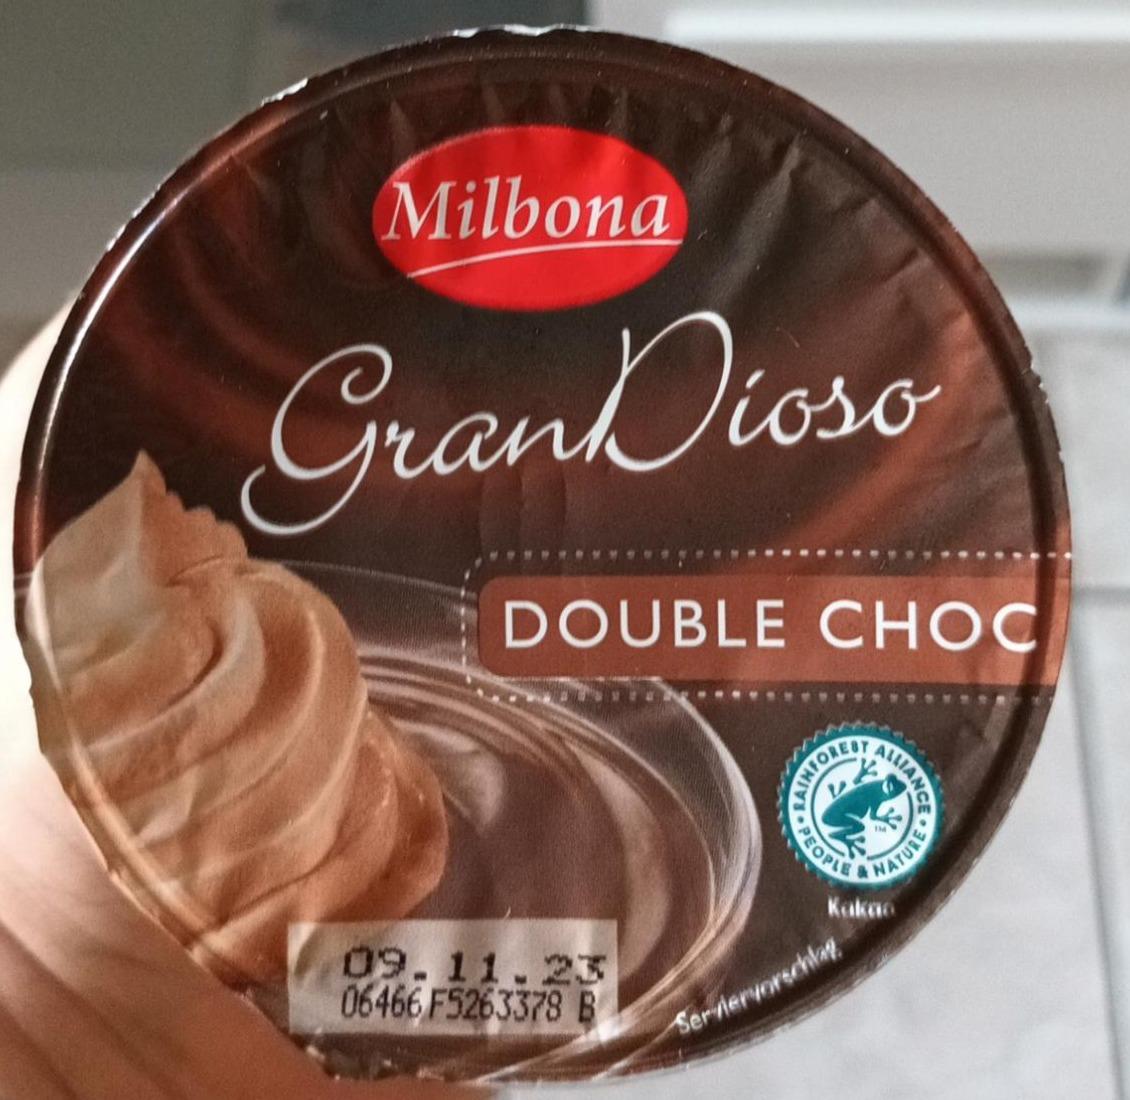 Fotografie - GranDioso Double Choc Milbona